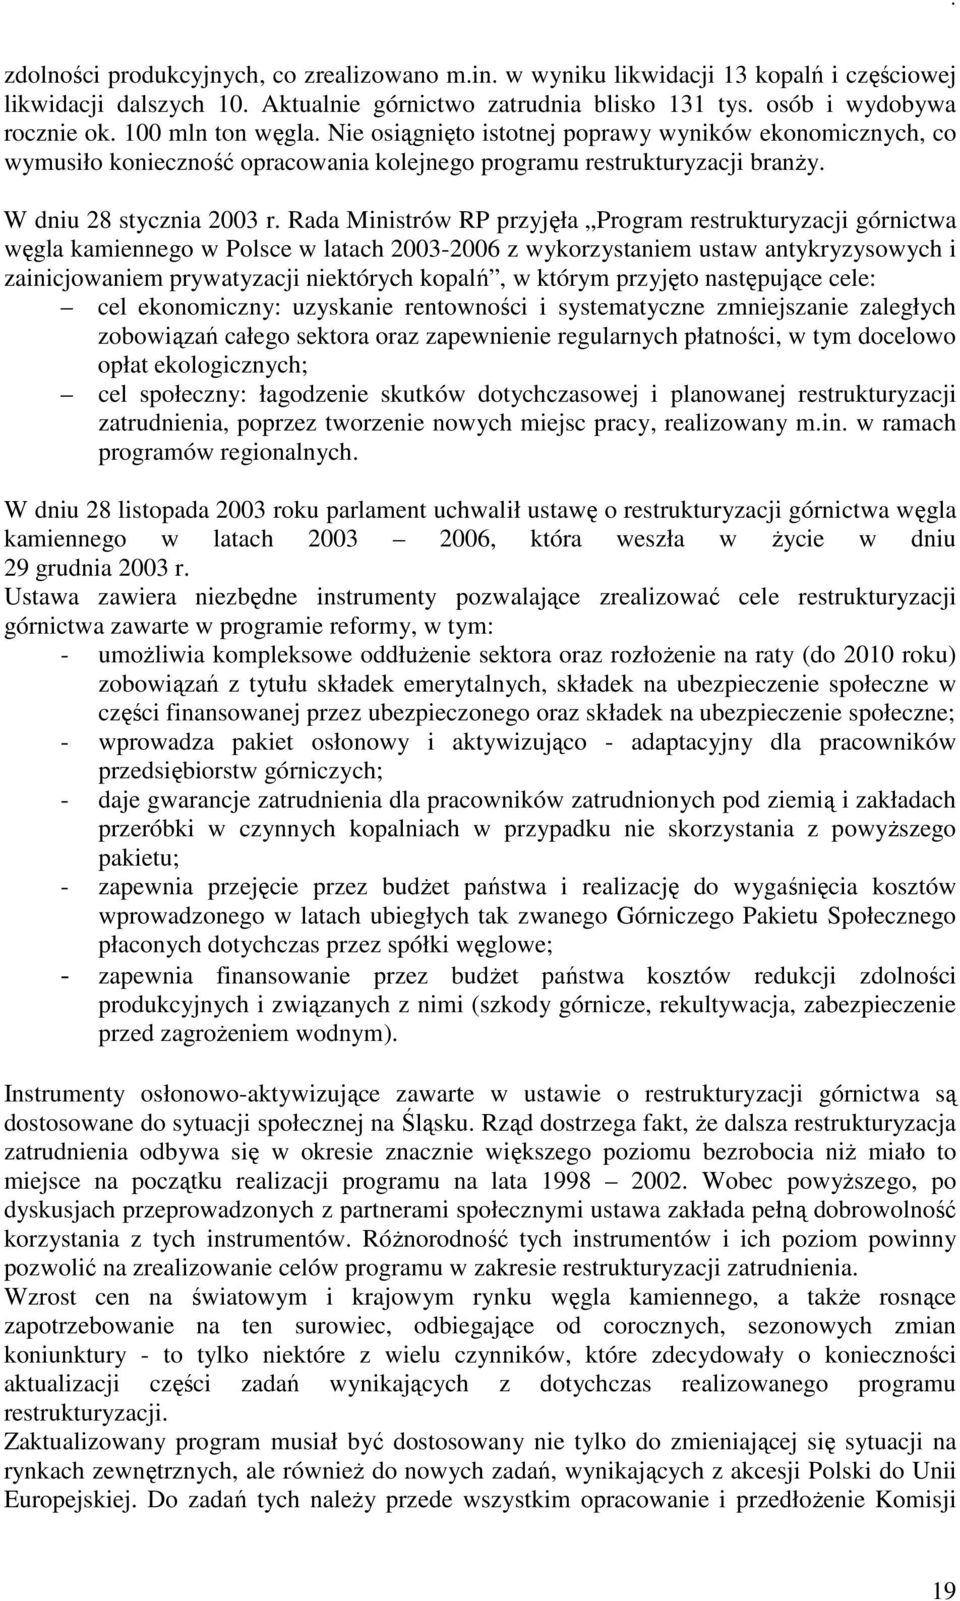 Rada Ministrów RP przyjęła Program restrukturyzacji górnictwa węgla kamiennego w Polsce w latach 2003-2006 z wykorzystaniem ustaw antykryzysowych i zainicjowaniem prywatyzacji niektórych kopalń, w